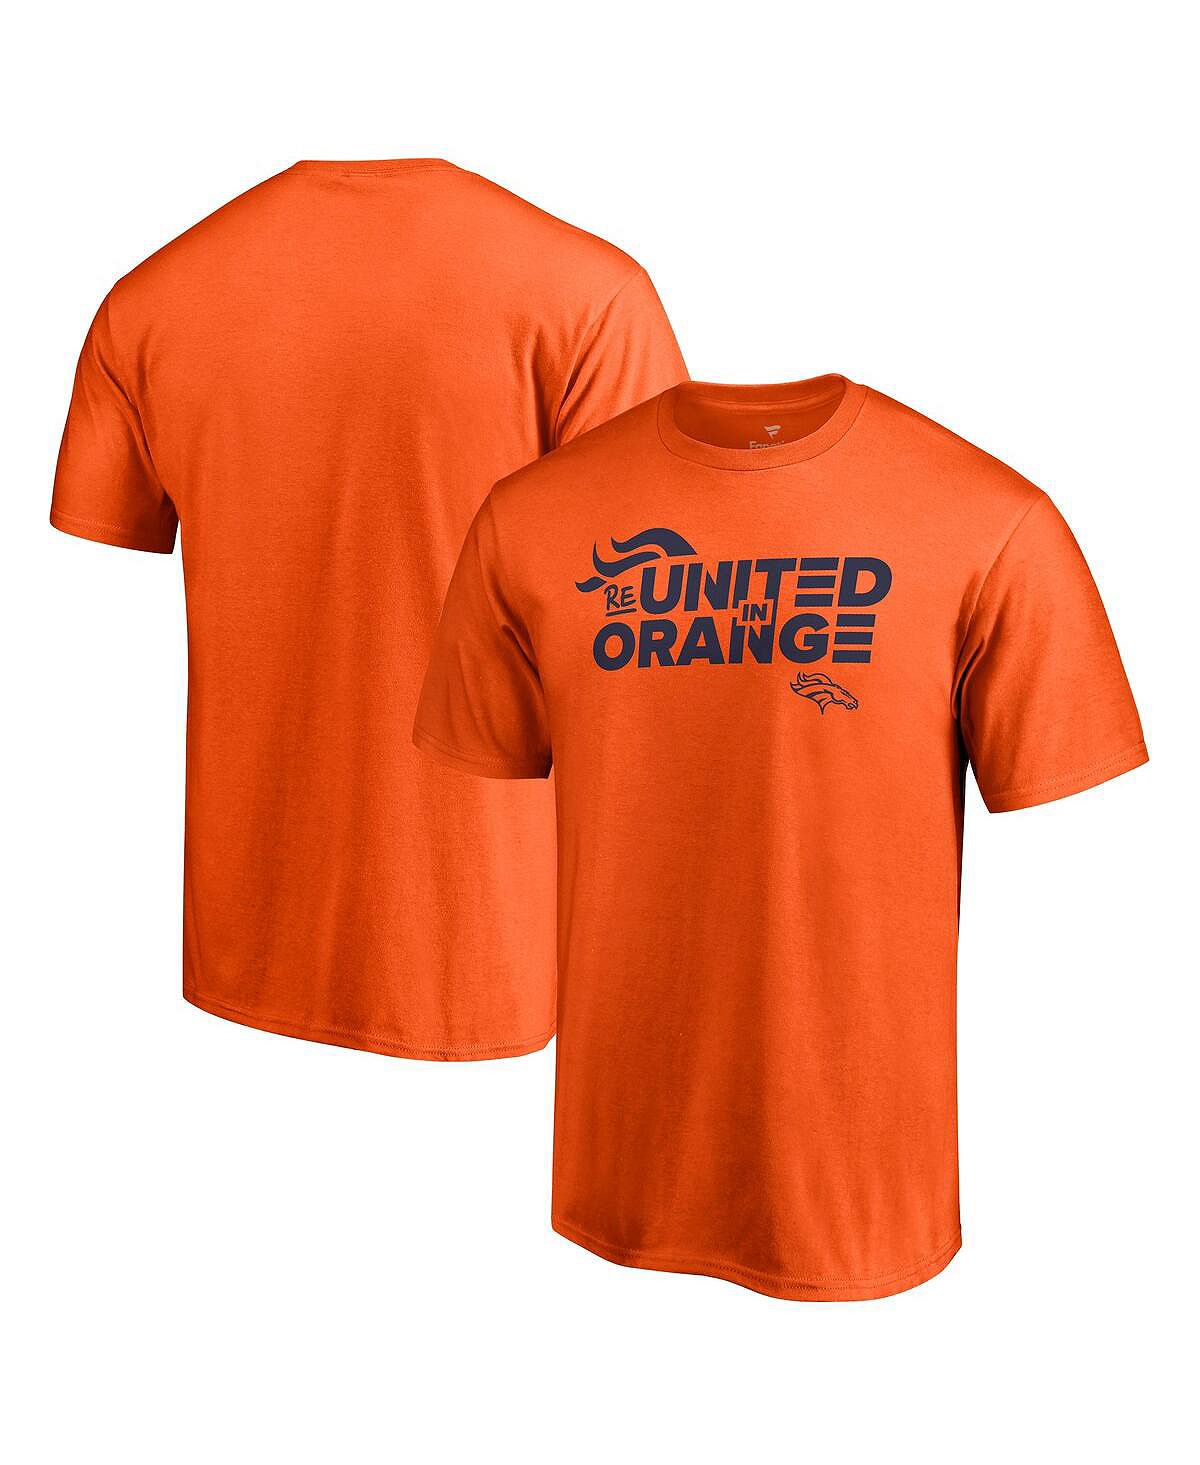 Мужская команда orange denver broncos воссоединилась в оранжевой футболке Fanatics мужская футболка peyton manning navy orange denver broncos 2015 split legacy копия джерси mitchell